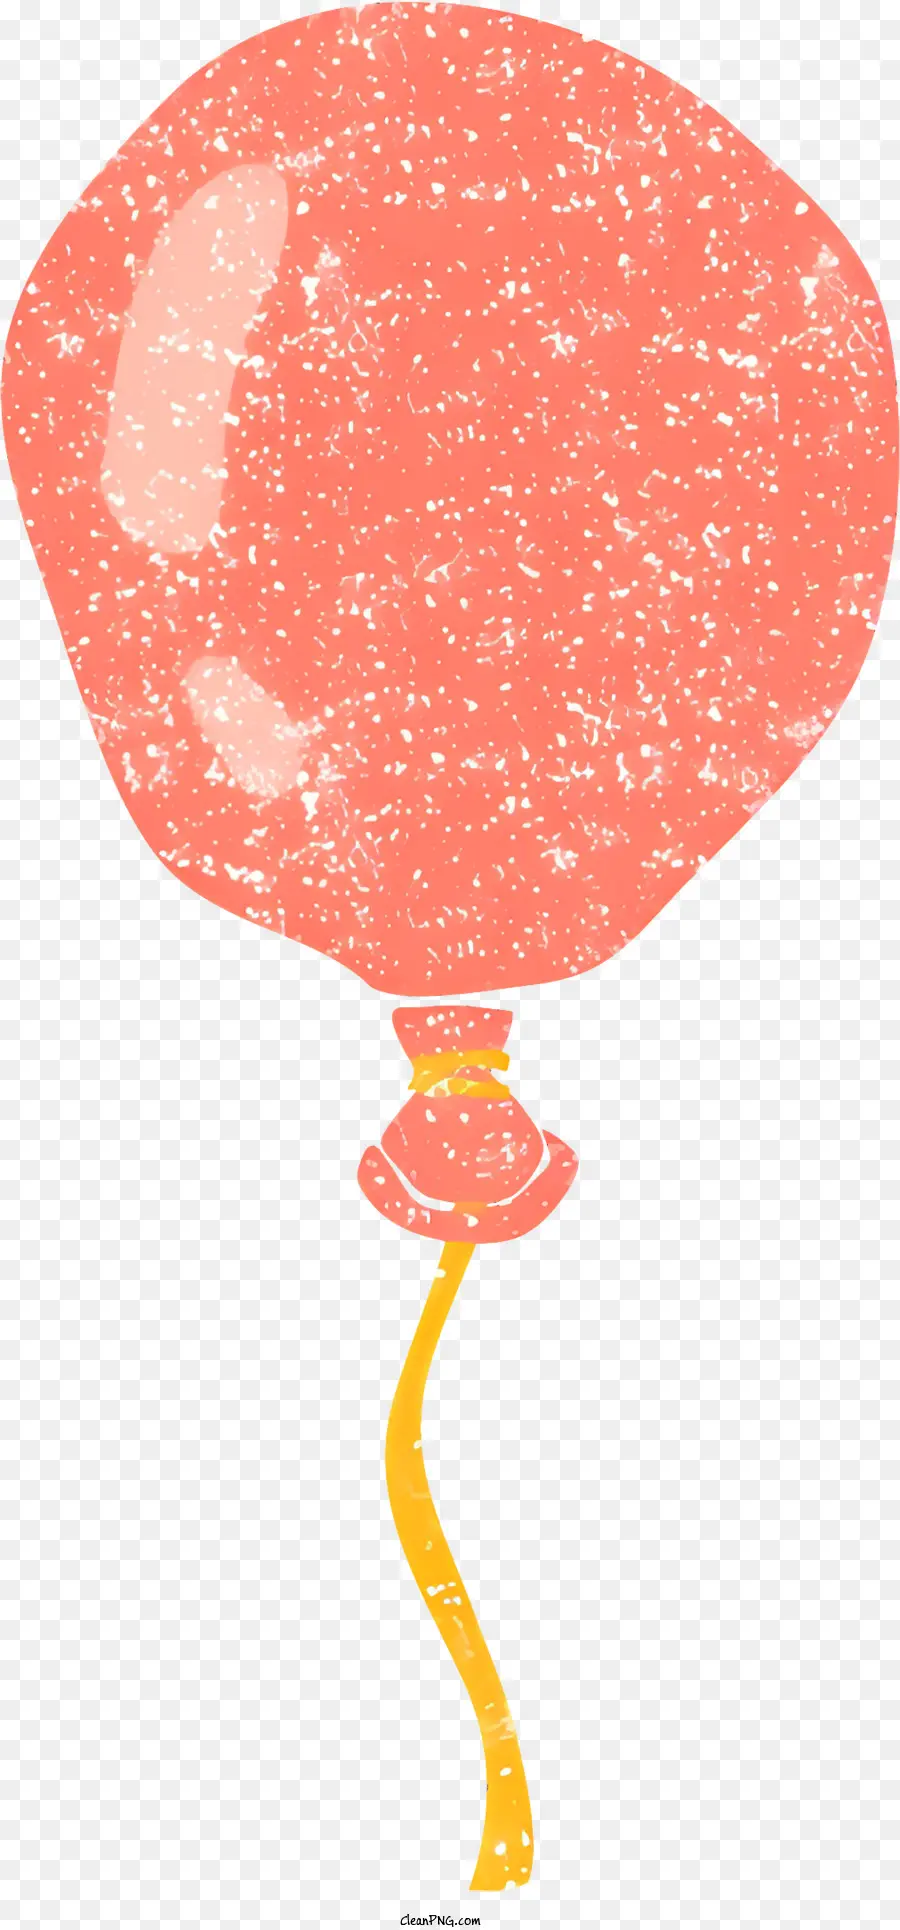 Roter Ballon - Deflatter roter Ballon mit gelben Schnur schwebend